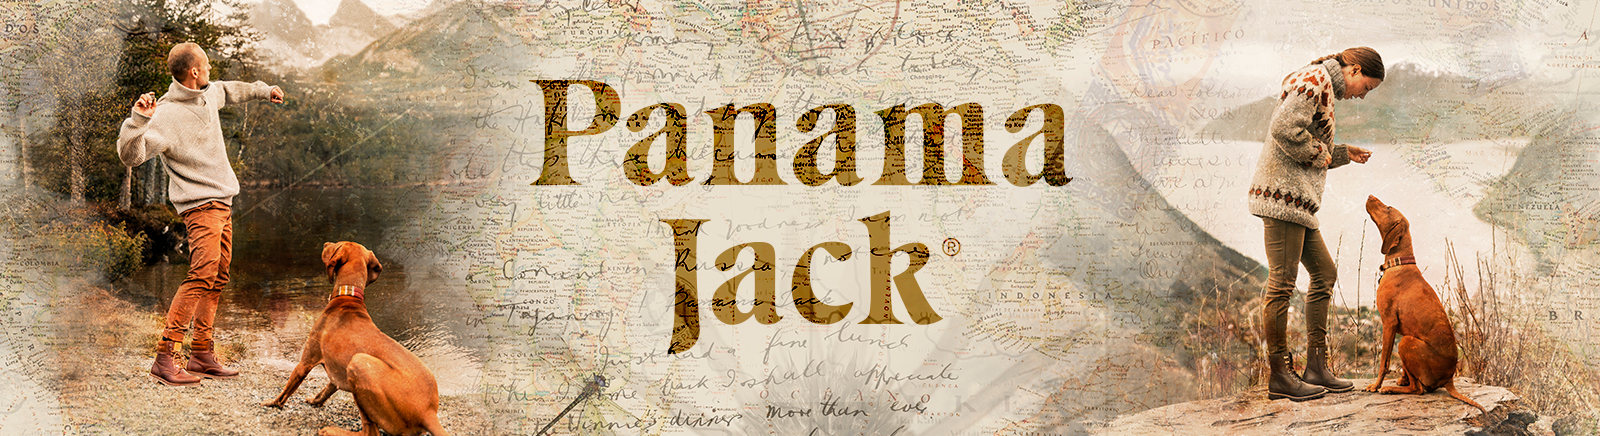 Prange: Panama Jack Stiefel für Damen online shoppen